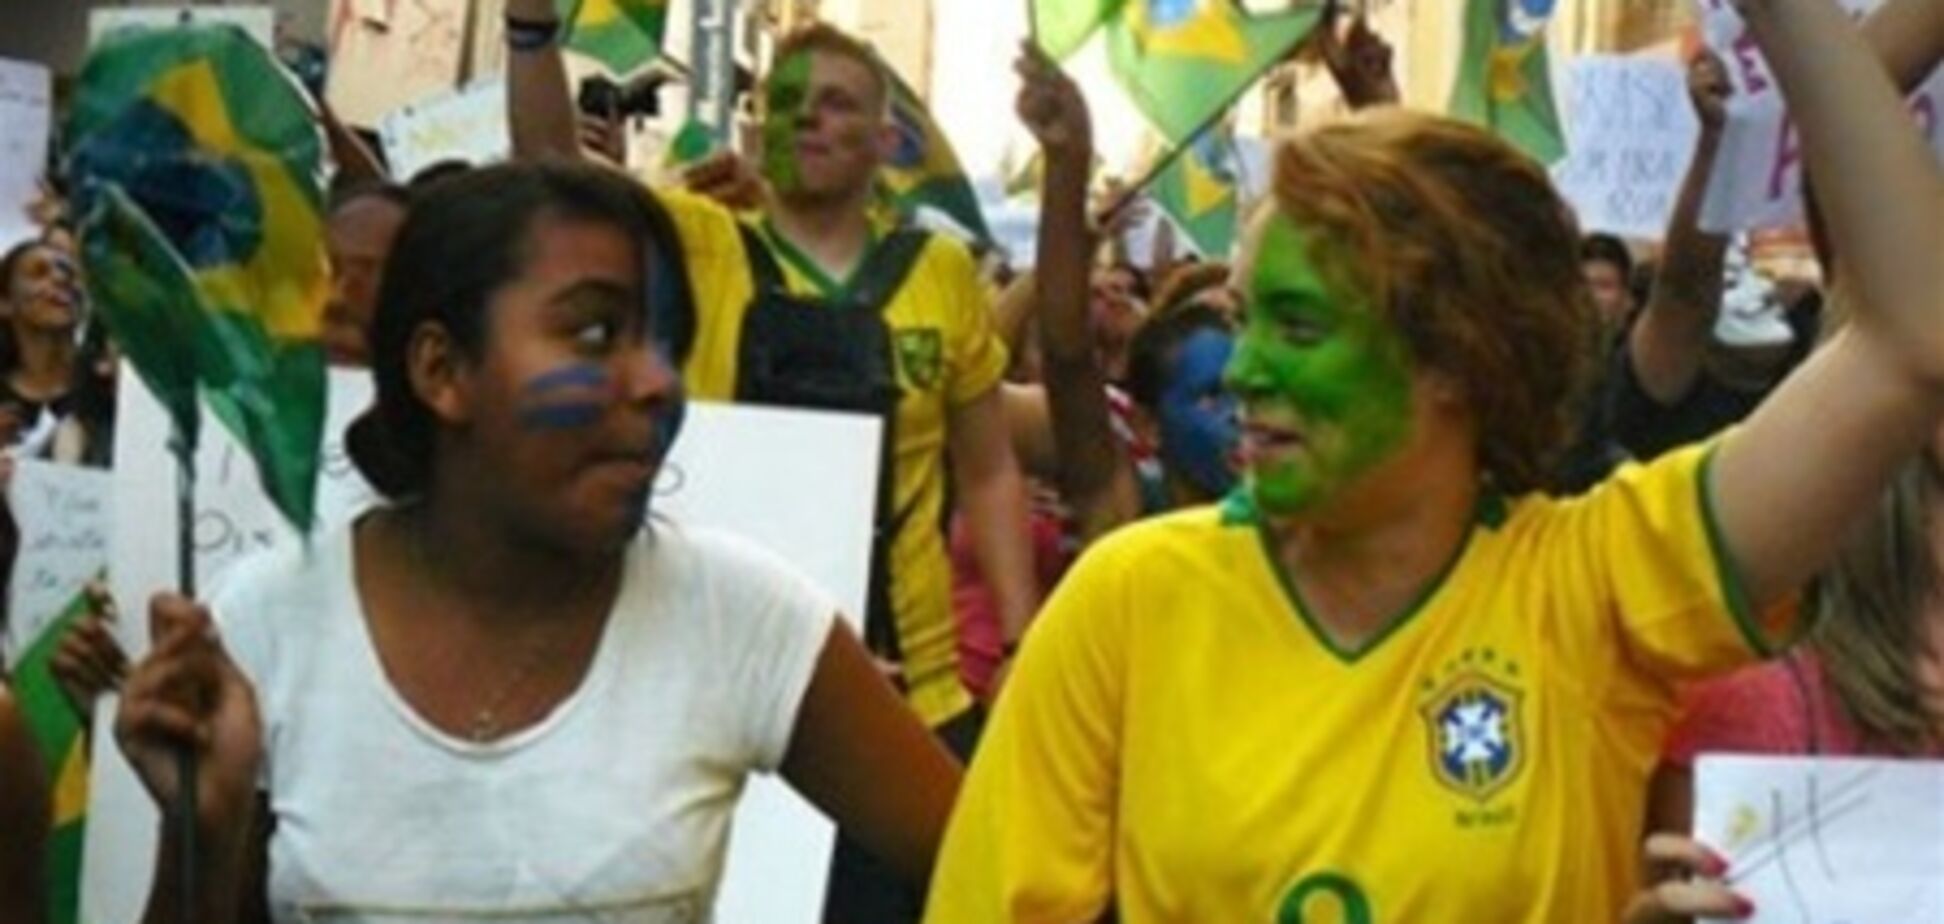 МИД просит украинцев не протестовать в Бразилии